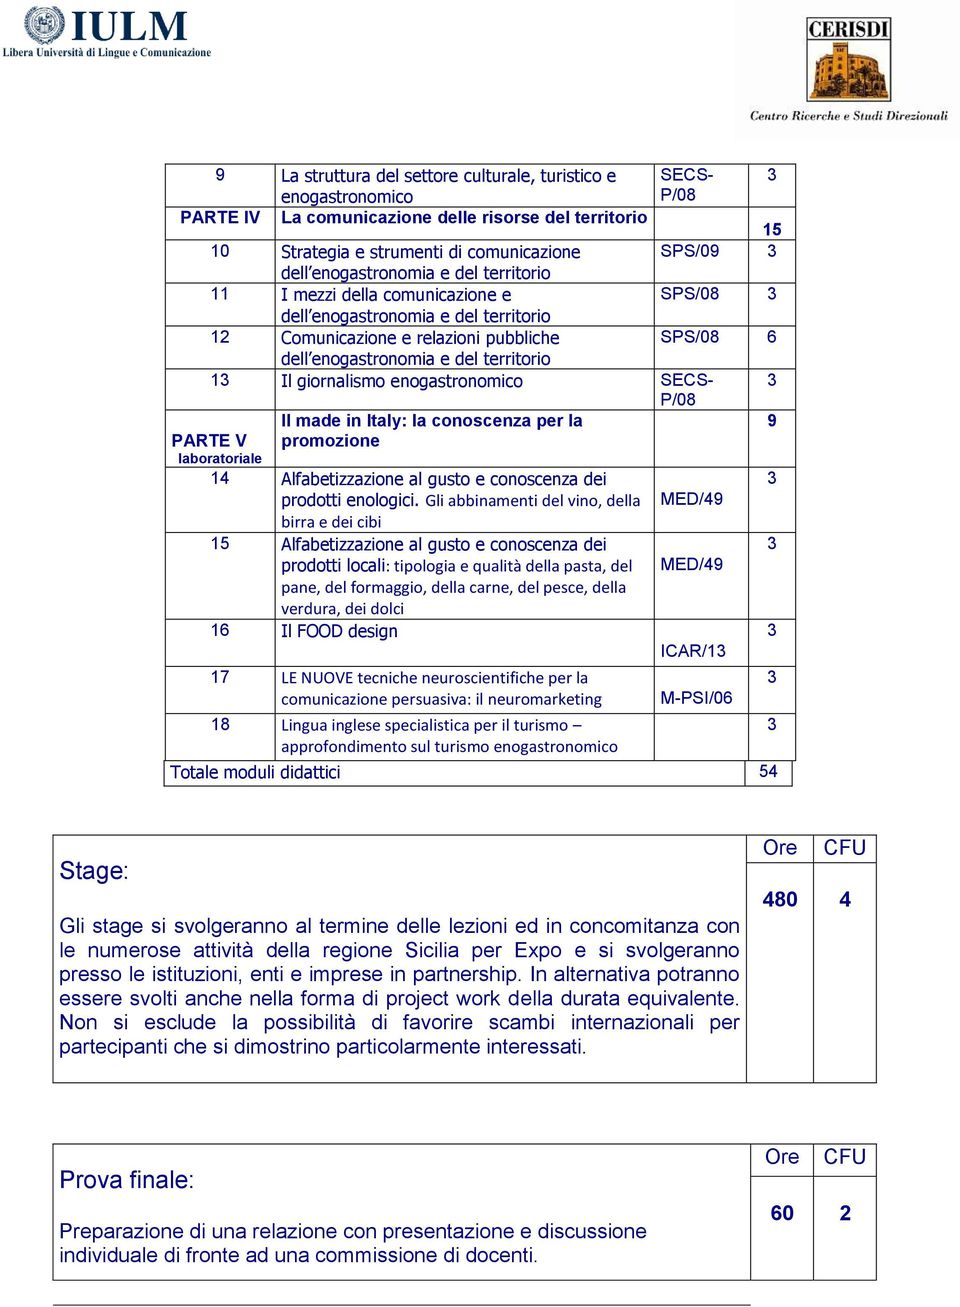 giornalismo enogastronomico SECS- P/08 Il made in Italy: la conoscenza per la 9 PARTE V laboratoriale promozione 14 Alfabetizzazione al gusto e conoscenza dei prodotti enologici.